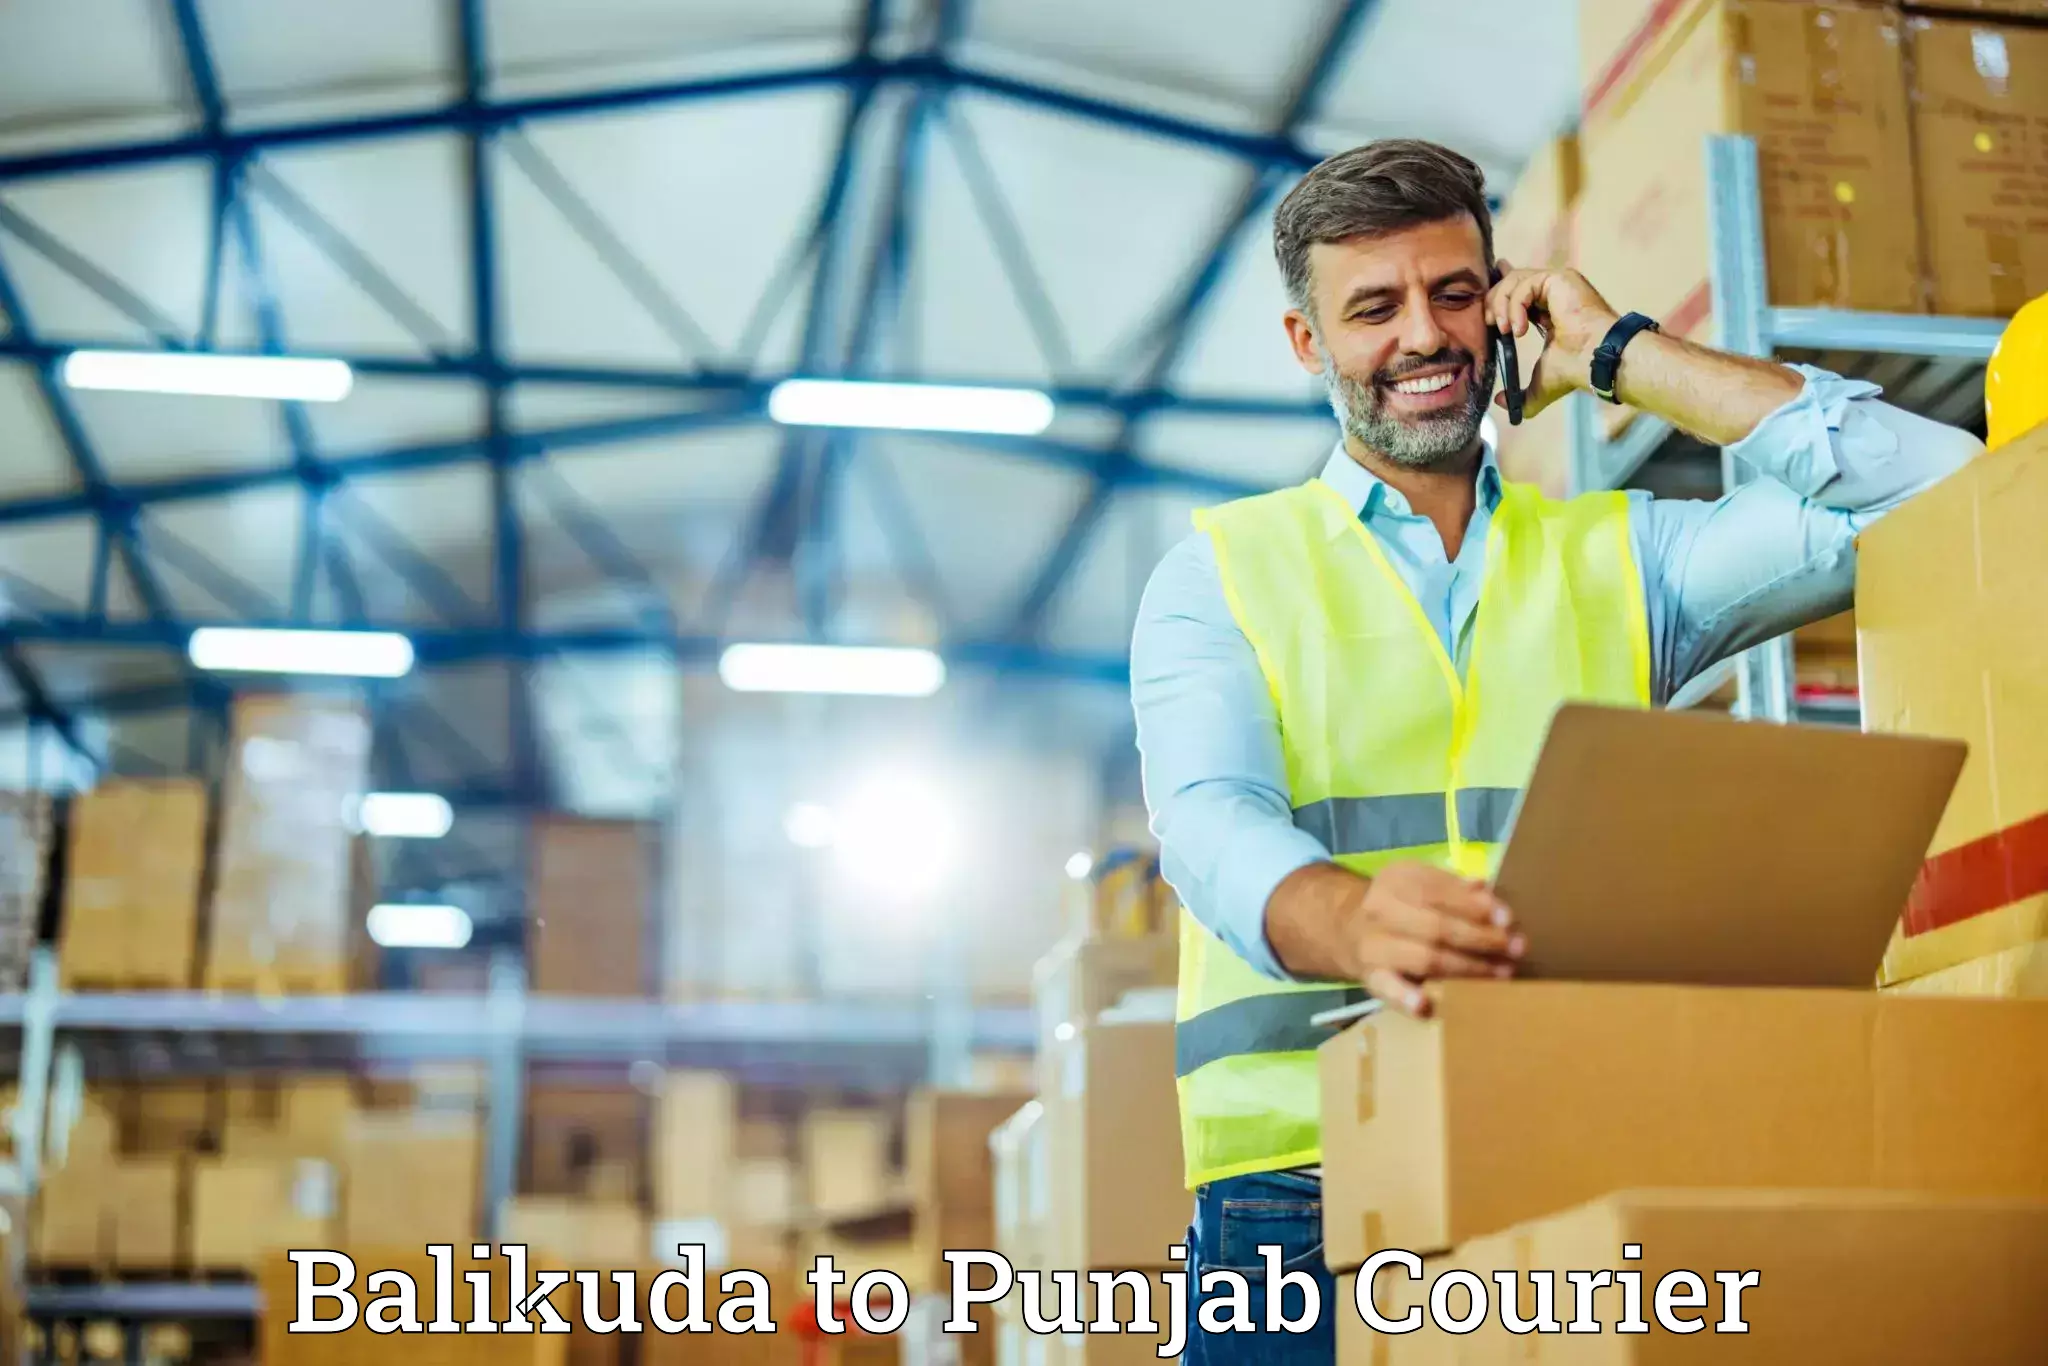 Reliable moving assistance Balikuda to Punjab